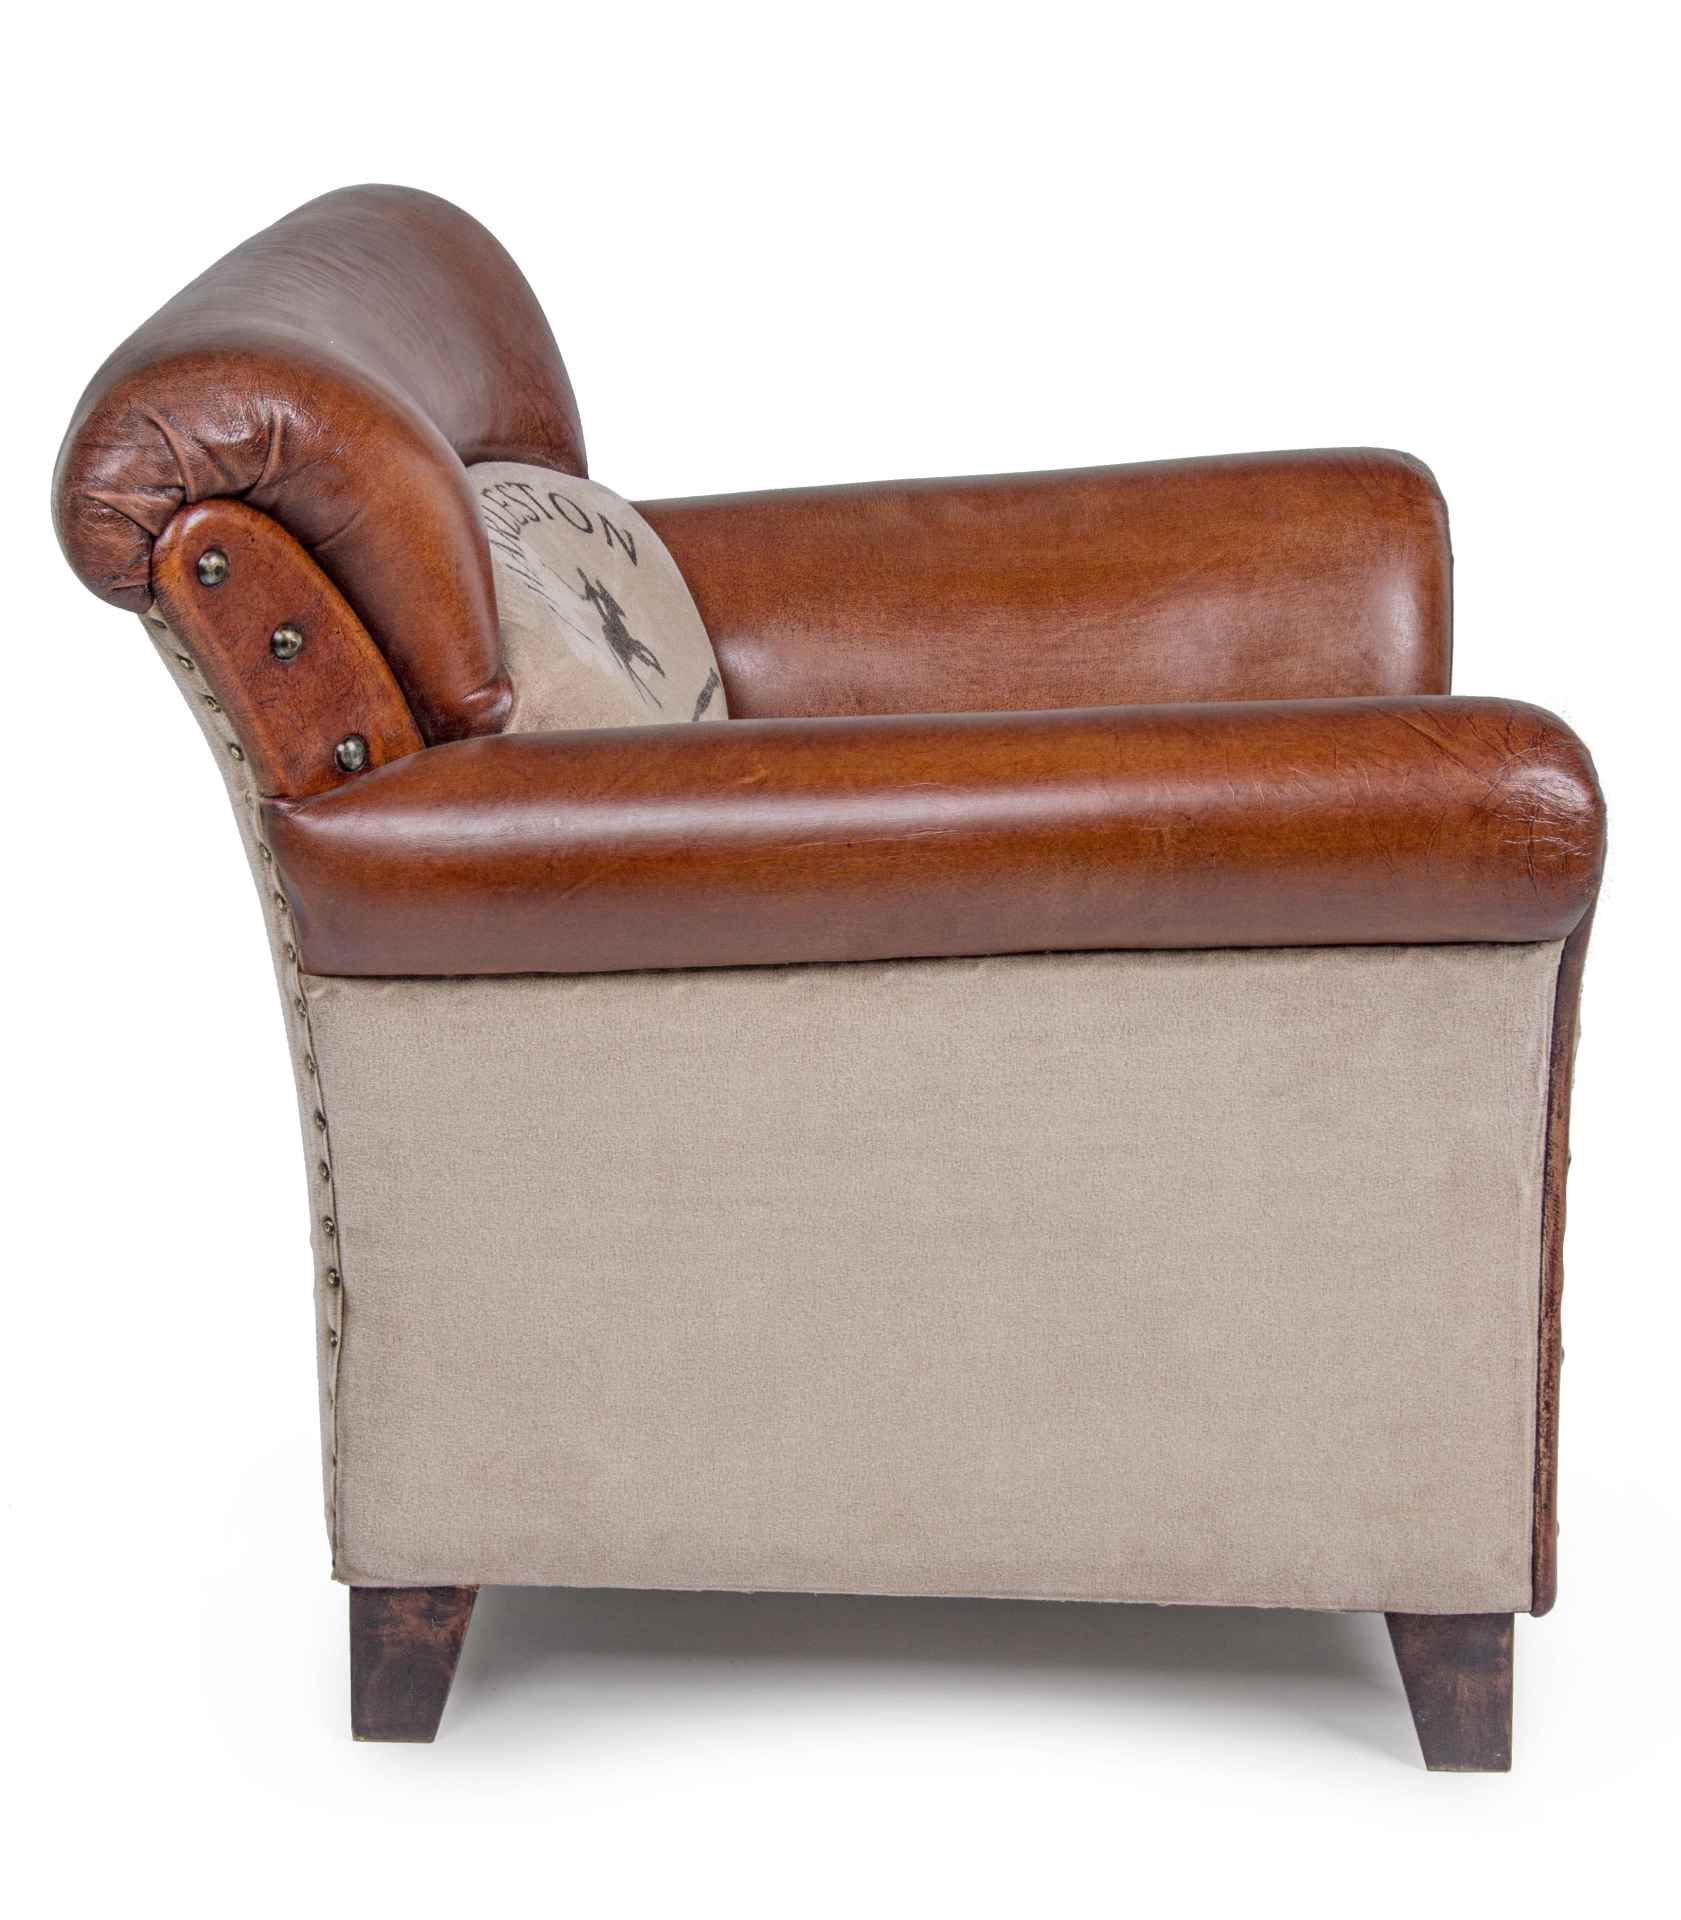 Der Sessel Charleston überzeugt mit seinem klassischen Design. Gefertigt wurde er aus Büffelleder, welches einen Cognac Farbton besitzt. Das Gestell ist aus Mangoholz und hat eine braune Farbe. Der Sessel besitzt eine Sitzhöhe von 46 cm. Die Breite beträg